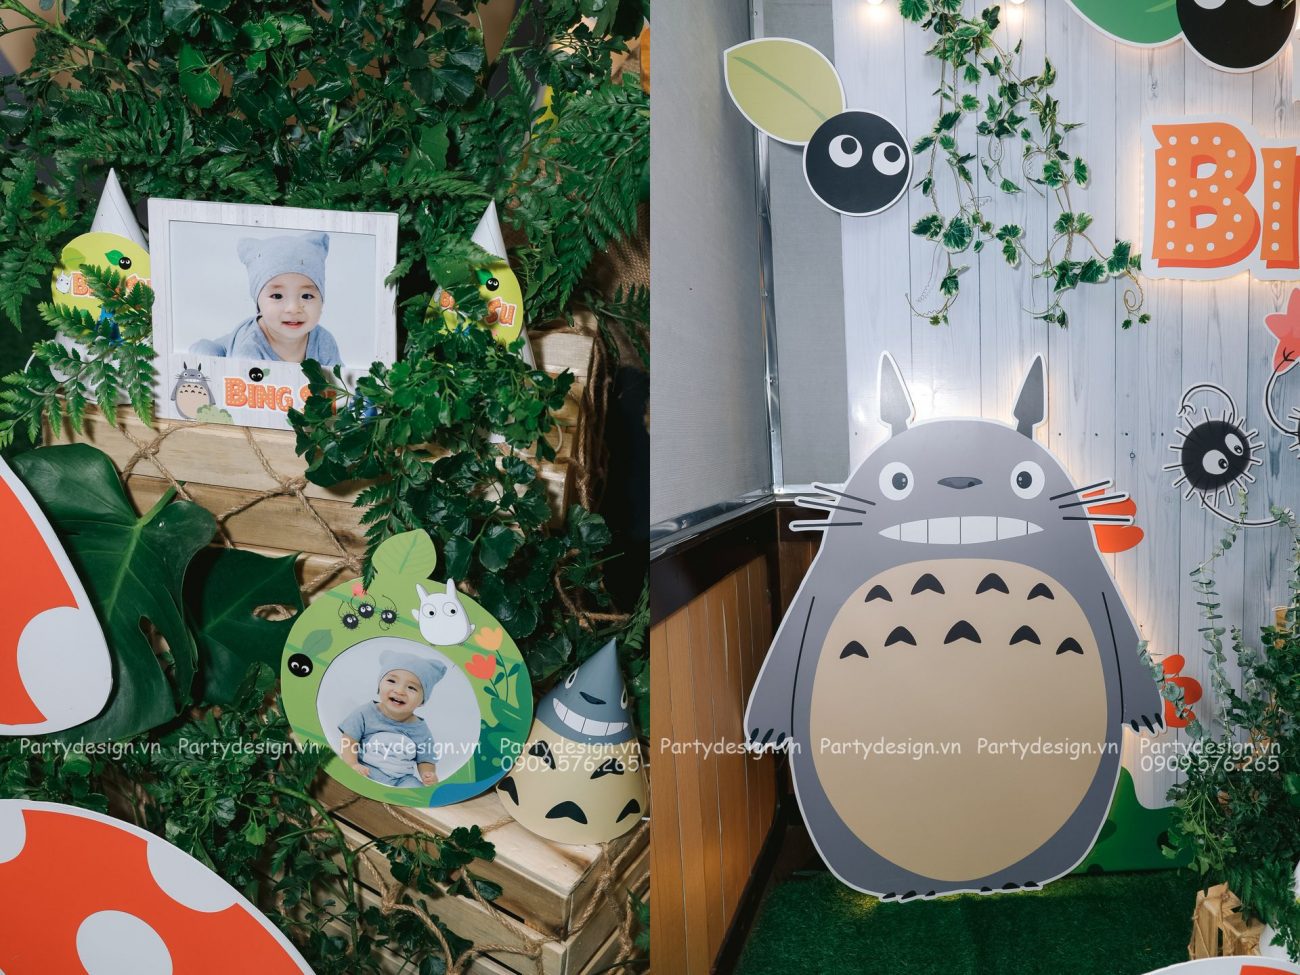 Trang trí sinh nhật thỏ Totoro - Bing Su